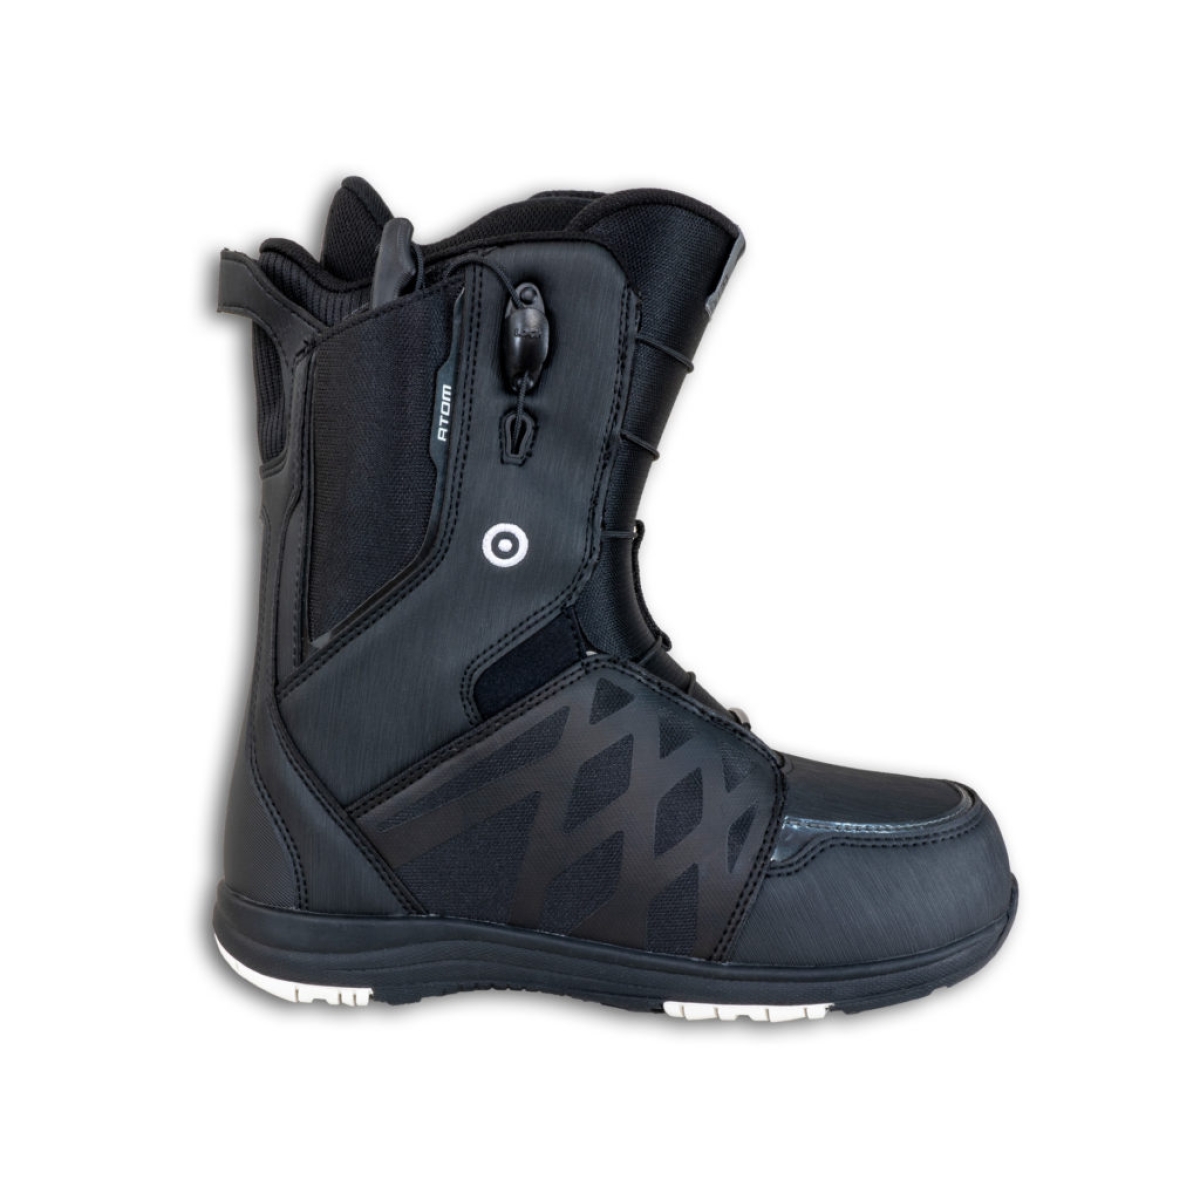 Ботинок для сноуборда Atom Team Black/White, год  2023, размер 44.5